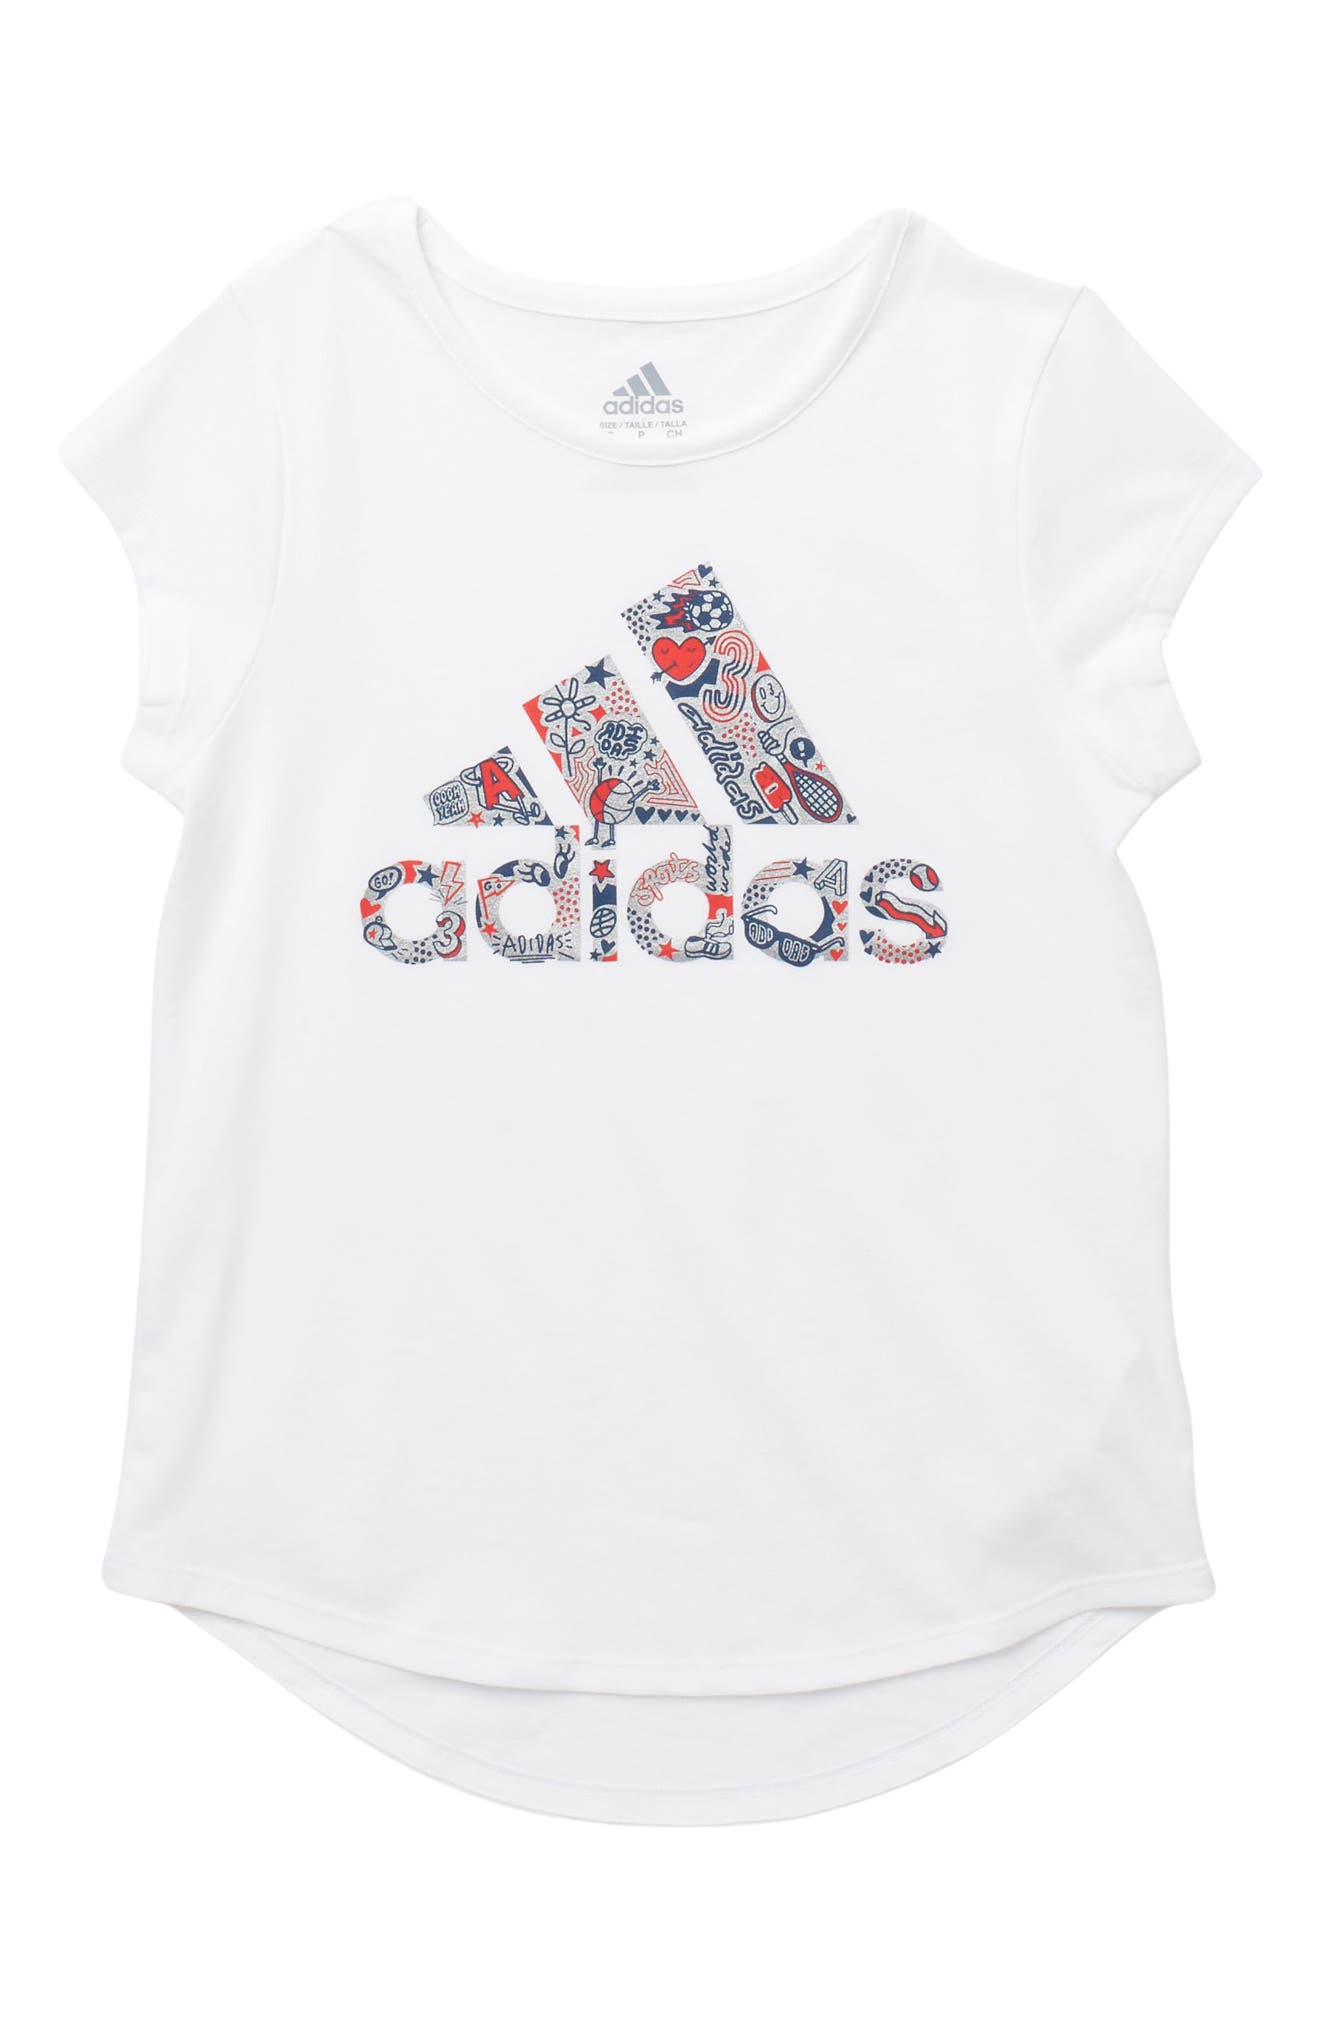 Adidas Originals Kids' Adi Usa Love T-shirt In White